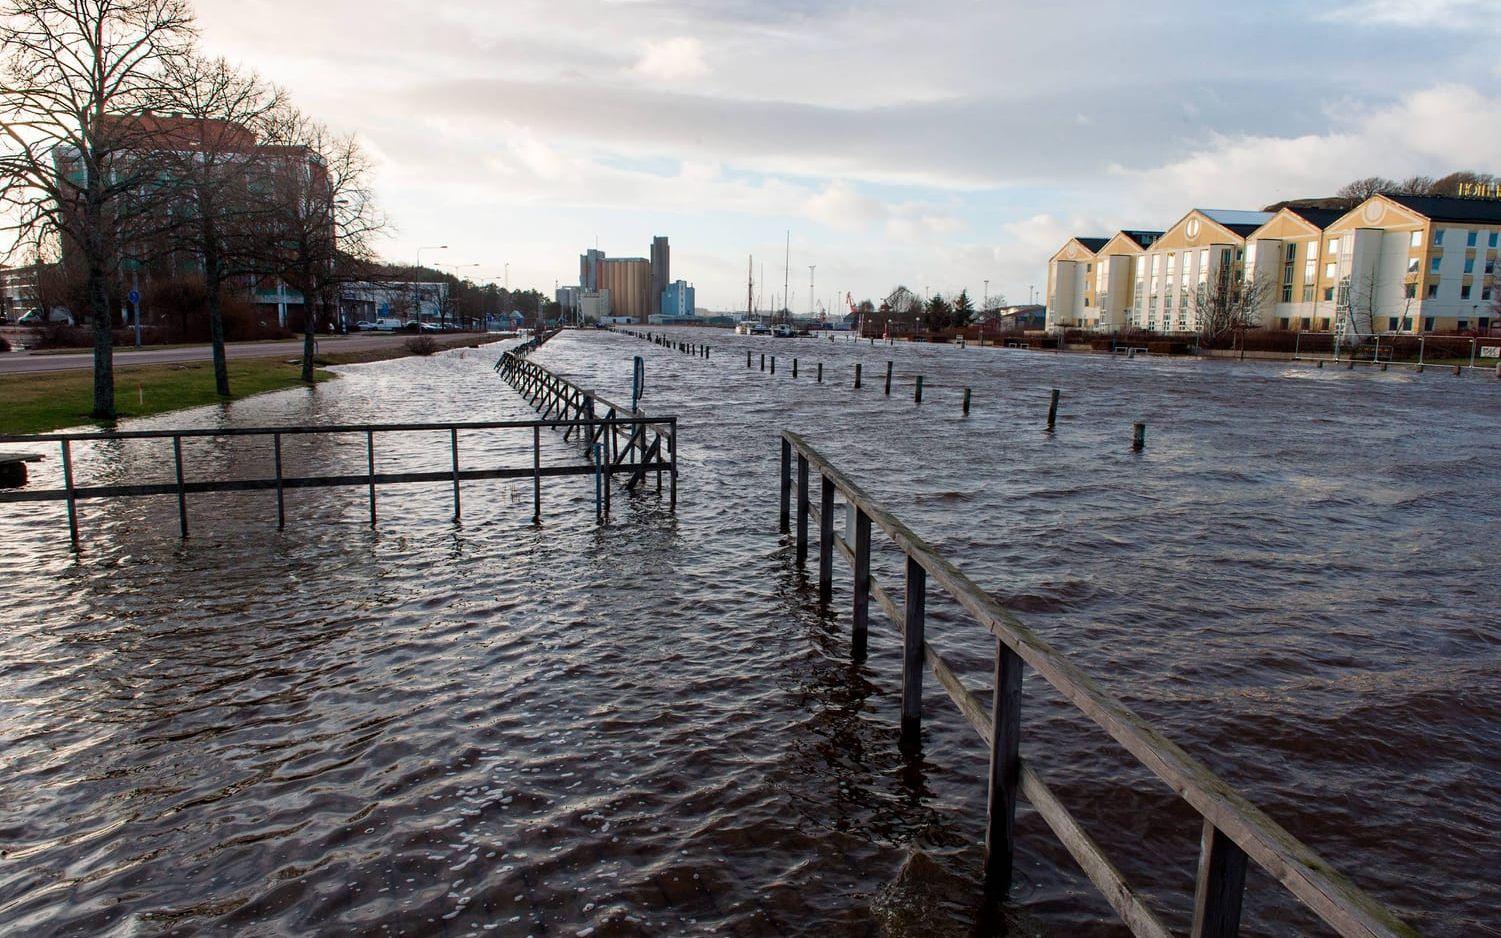 Översvämning vid Riverside. Bild: Lasse Edwartz